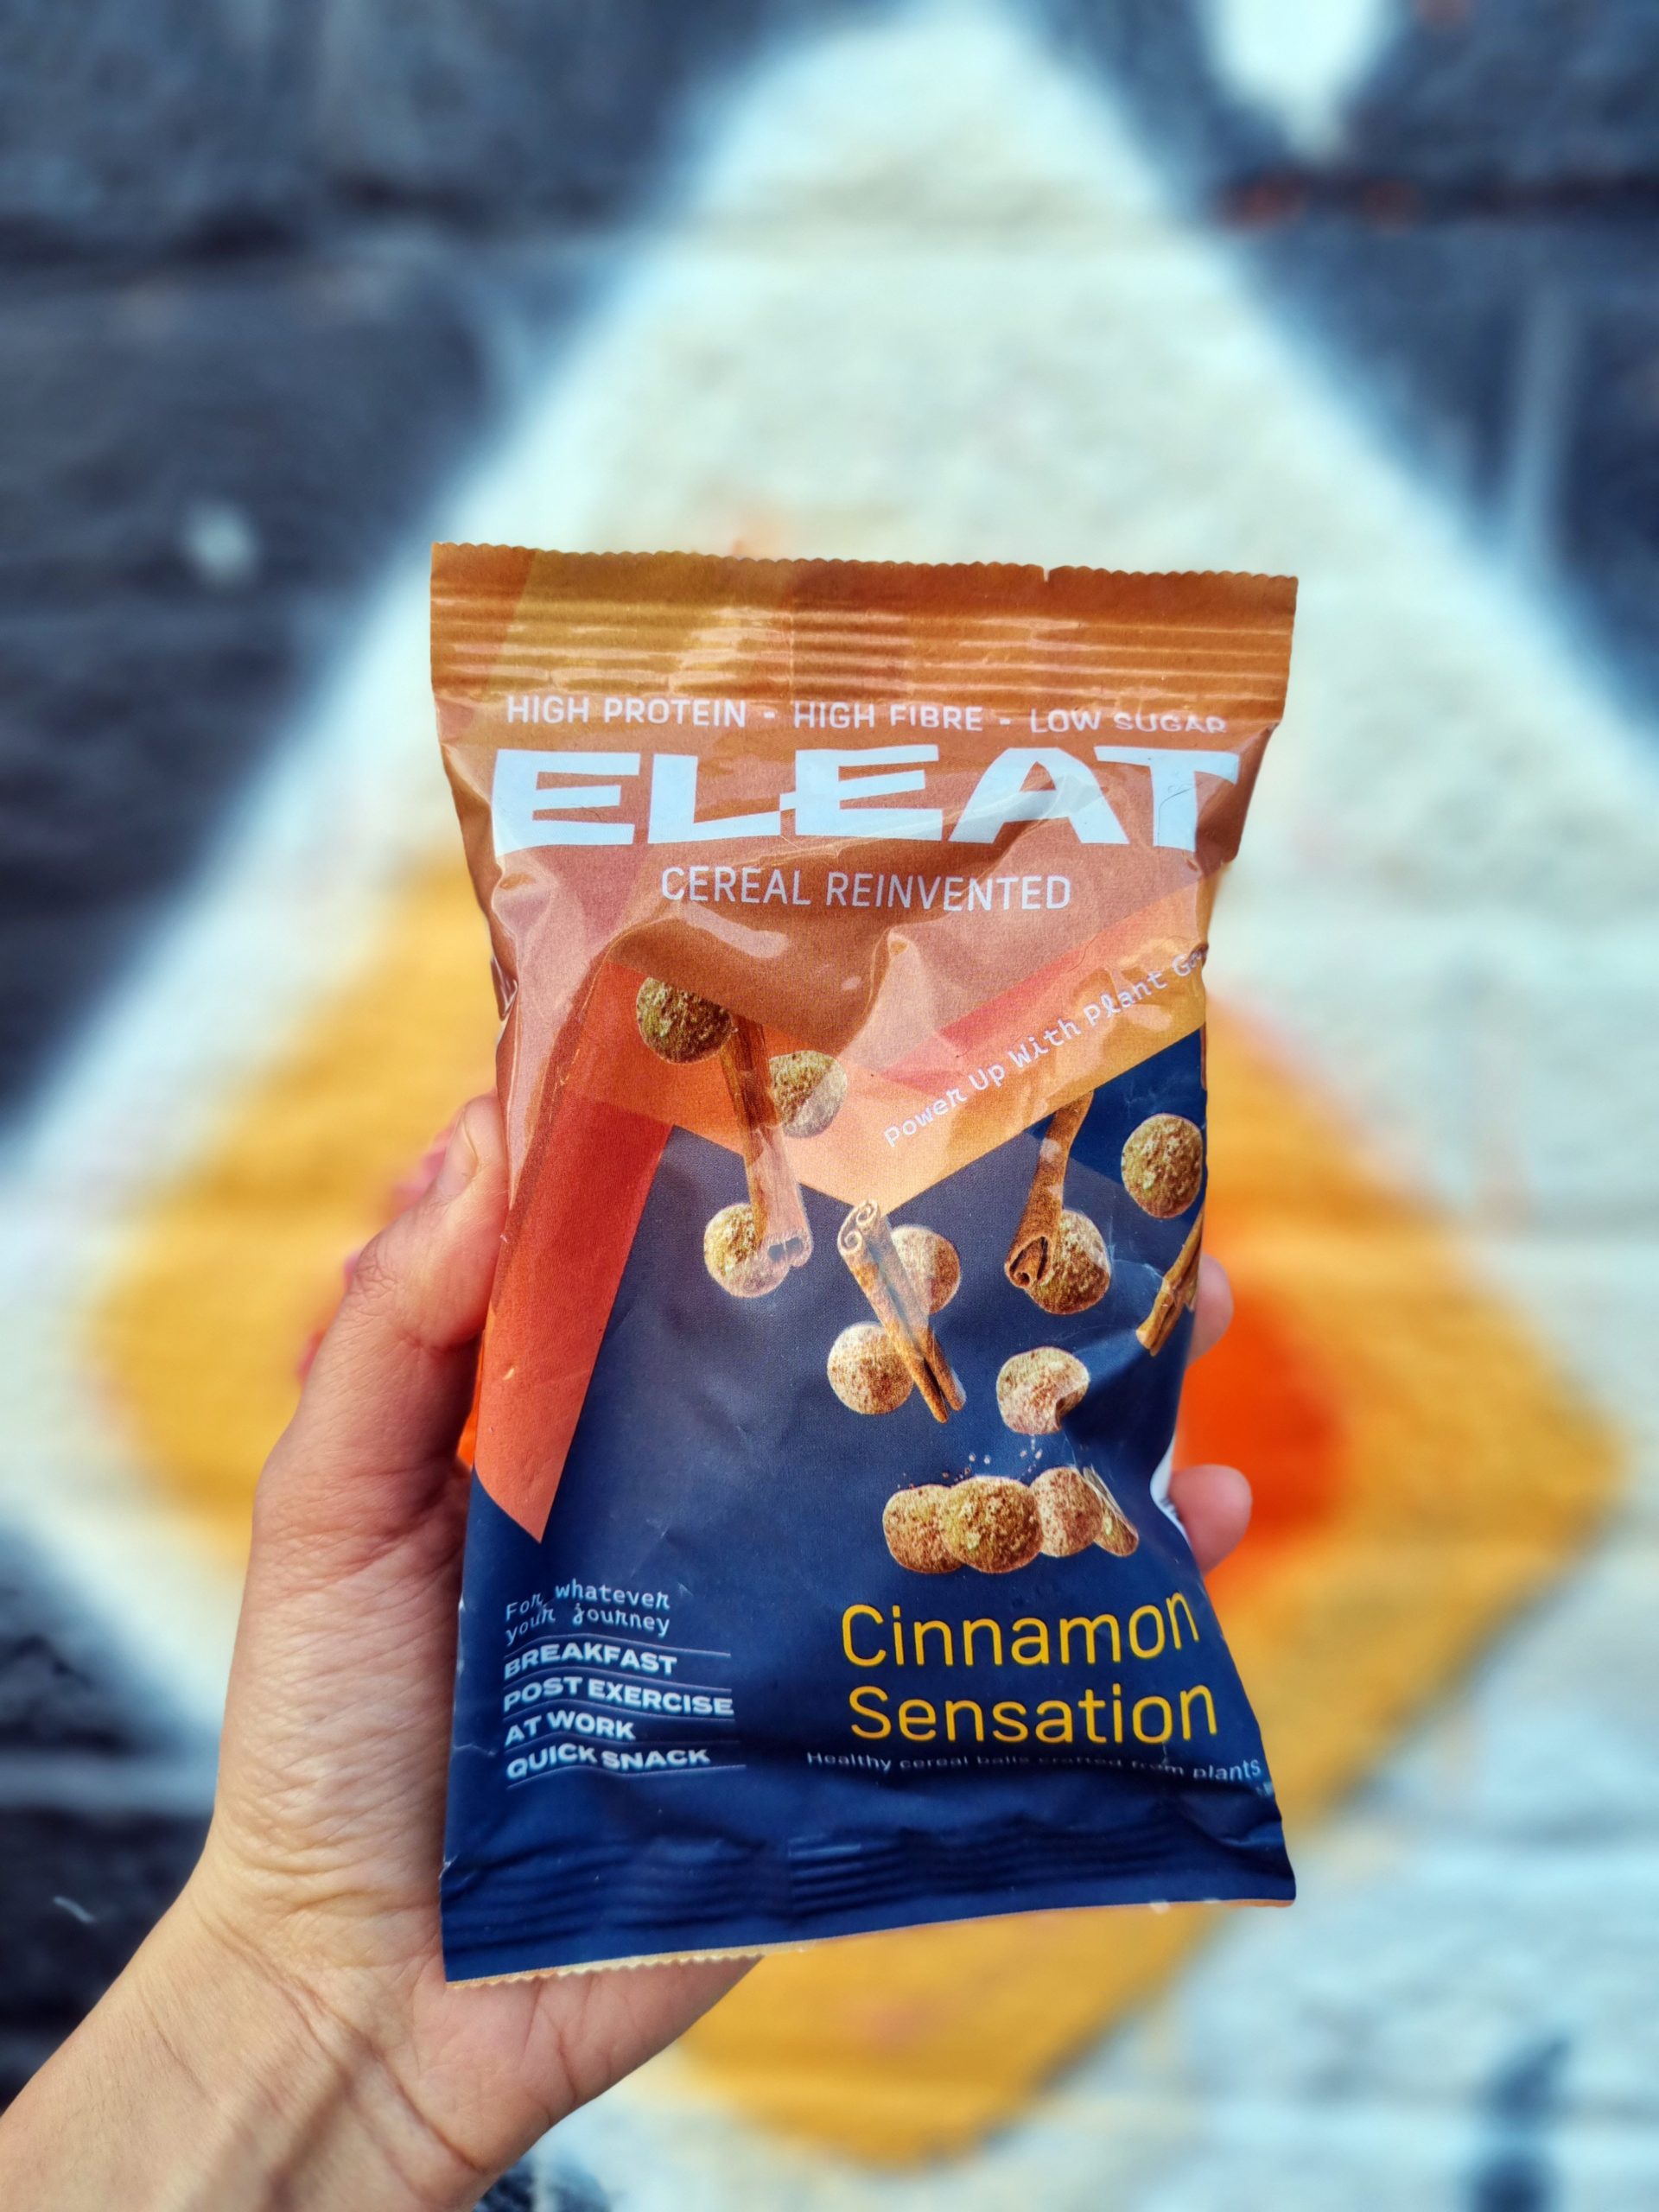 <img src="eleatjpg" alt="eleat cinnamon sensation cereal"/> 